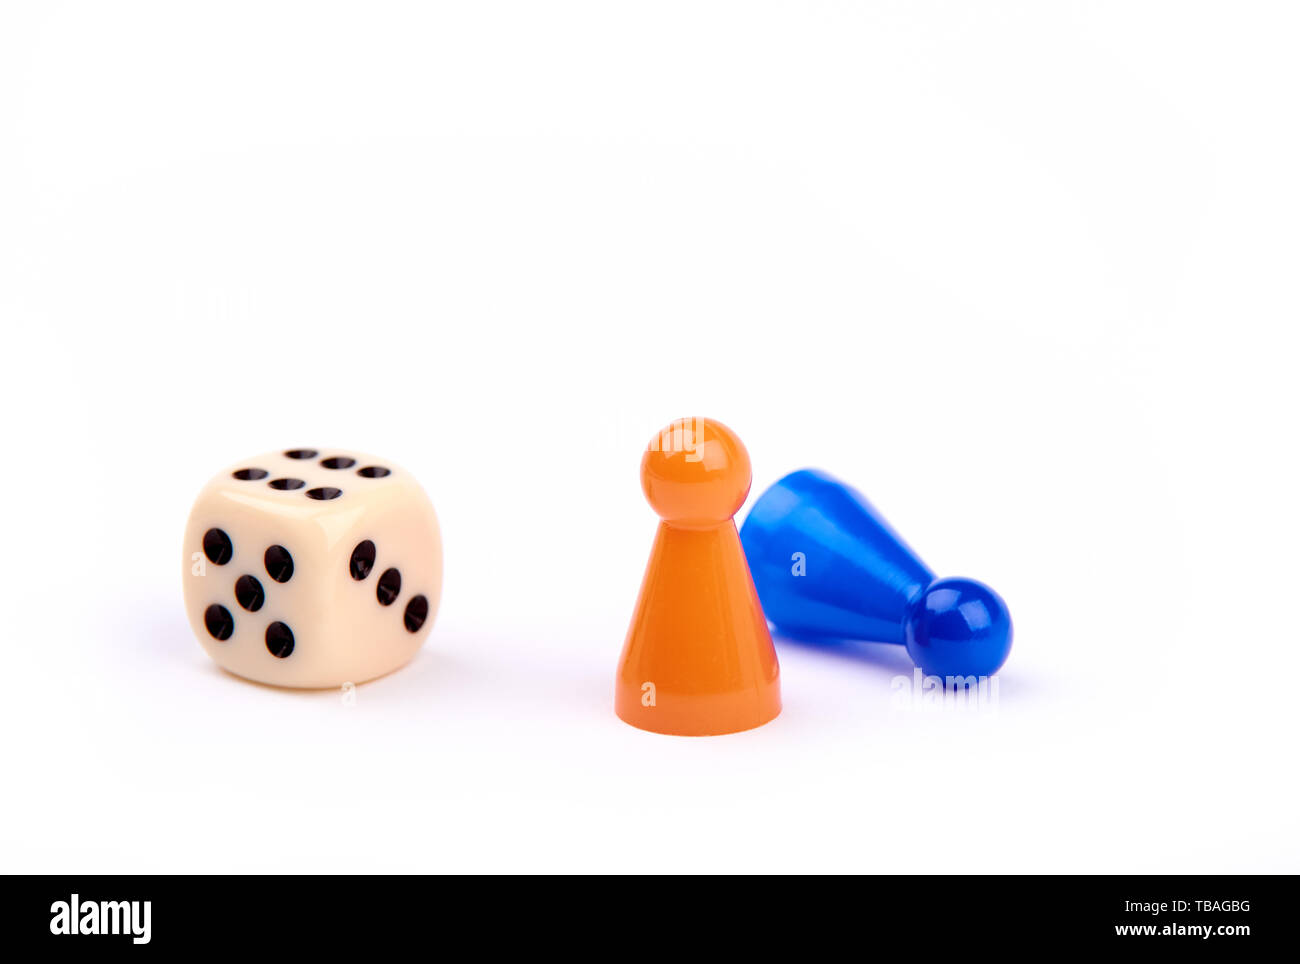 Jugar a los dados con puntos negros y el número seis, dos piezas de juego, naranja y azul como ganador permanente mintiendo como perdedor - aisladas sobre fondo blanco. Foto de stock